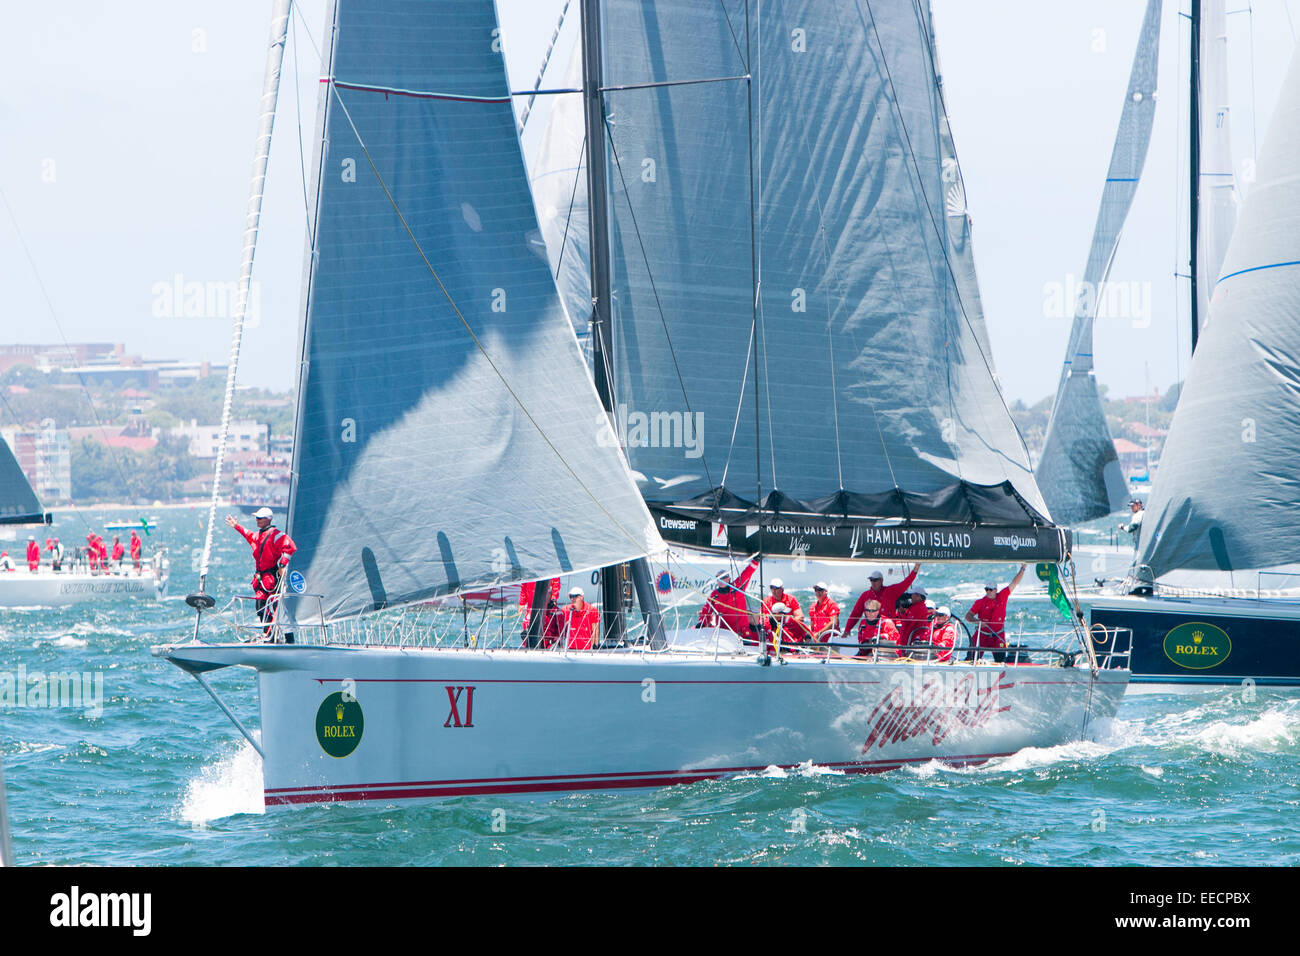 L'avoine sauvage x1 dans le port de Sydney de la préparation pour le début de la 2014 Sydney to hobart yacht race, de l'Australie Banque D'Images